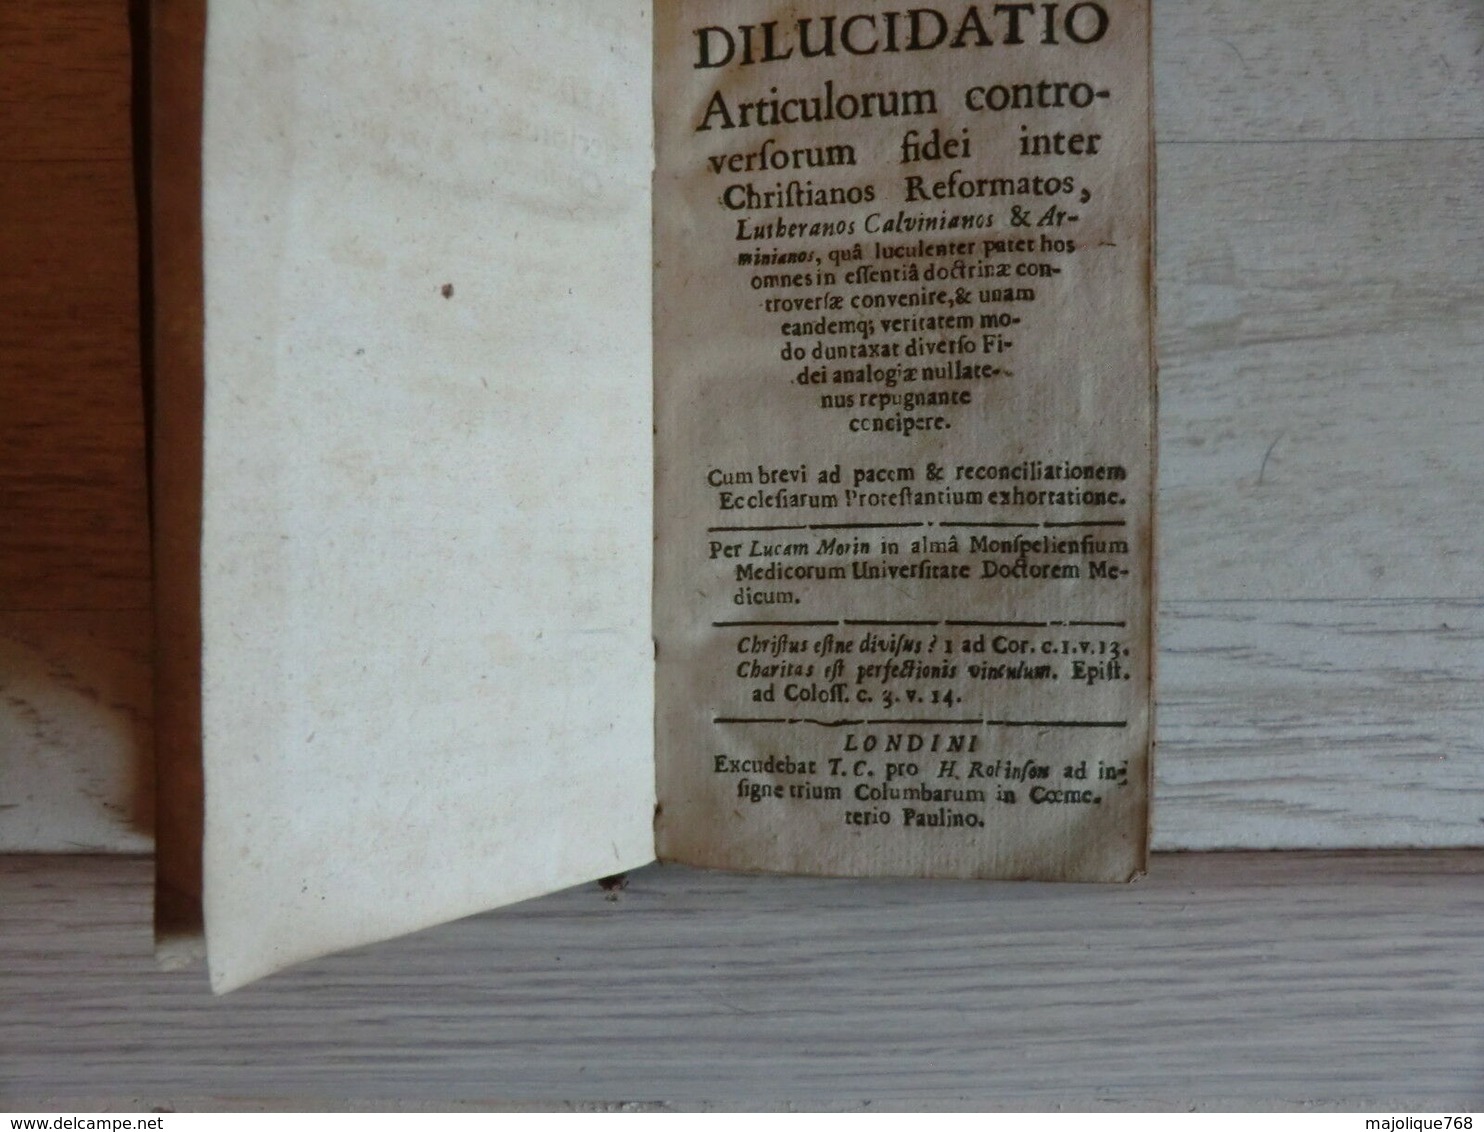 Dilucidatio Des Articles Controversés De La Foi De L'Église Réformée, Luthérien - Before 18th Century